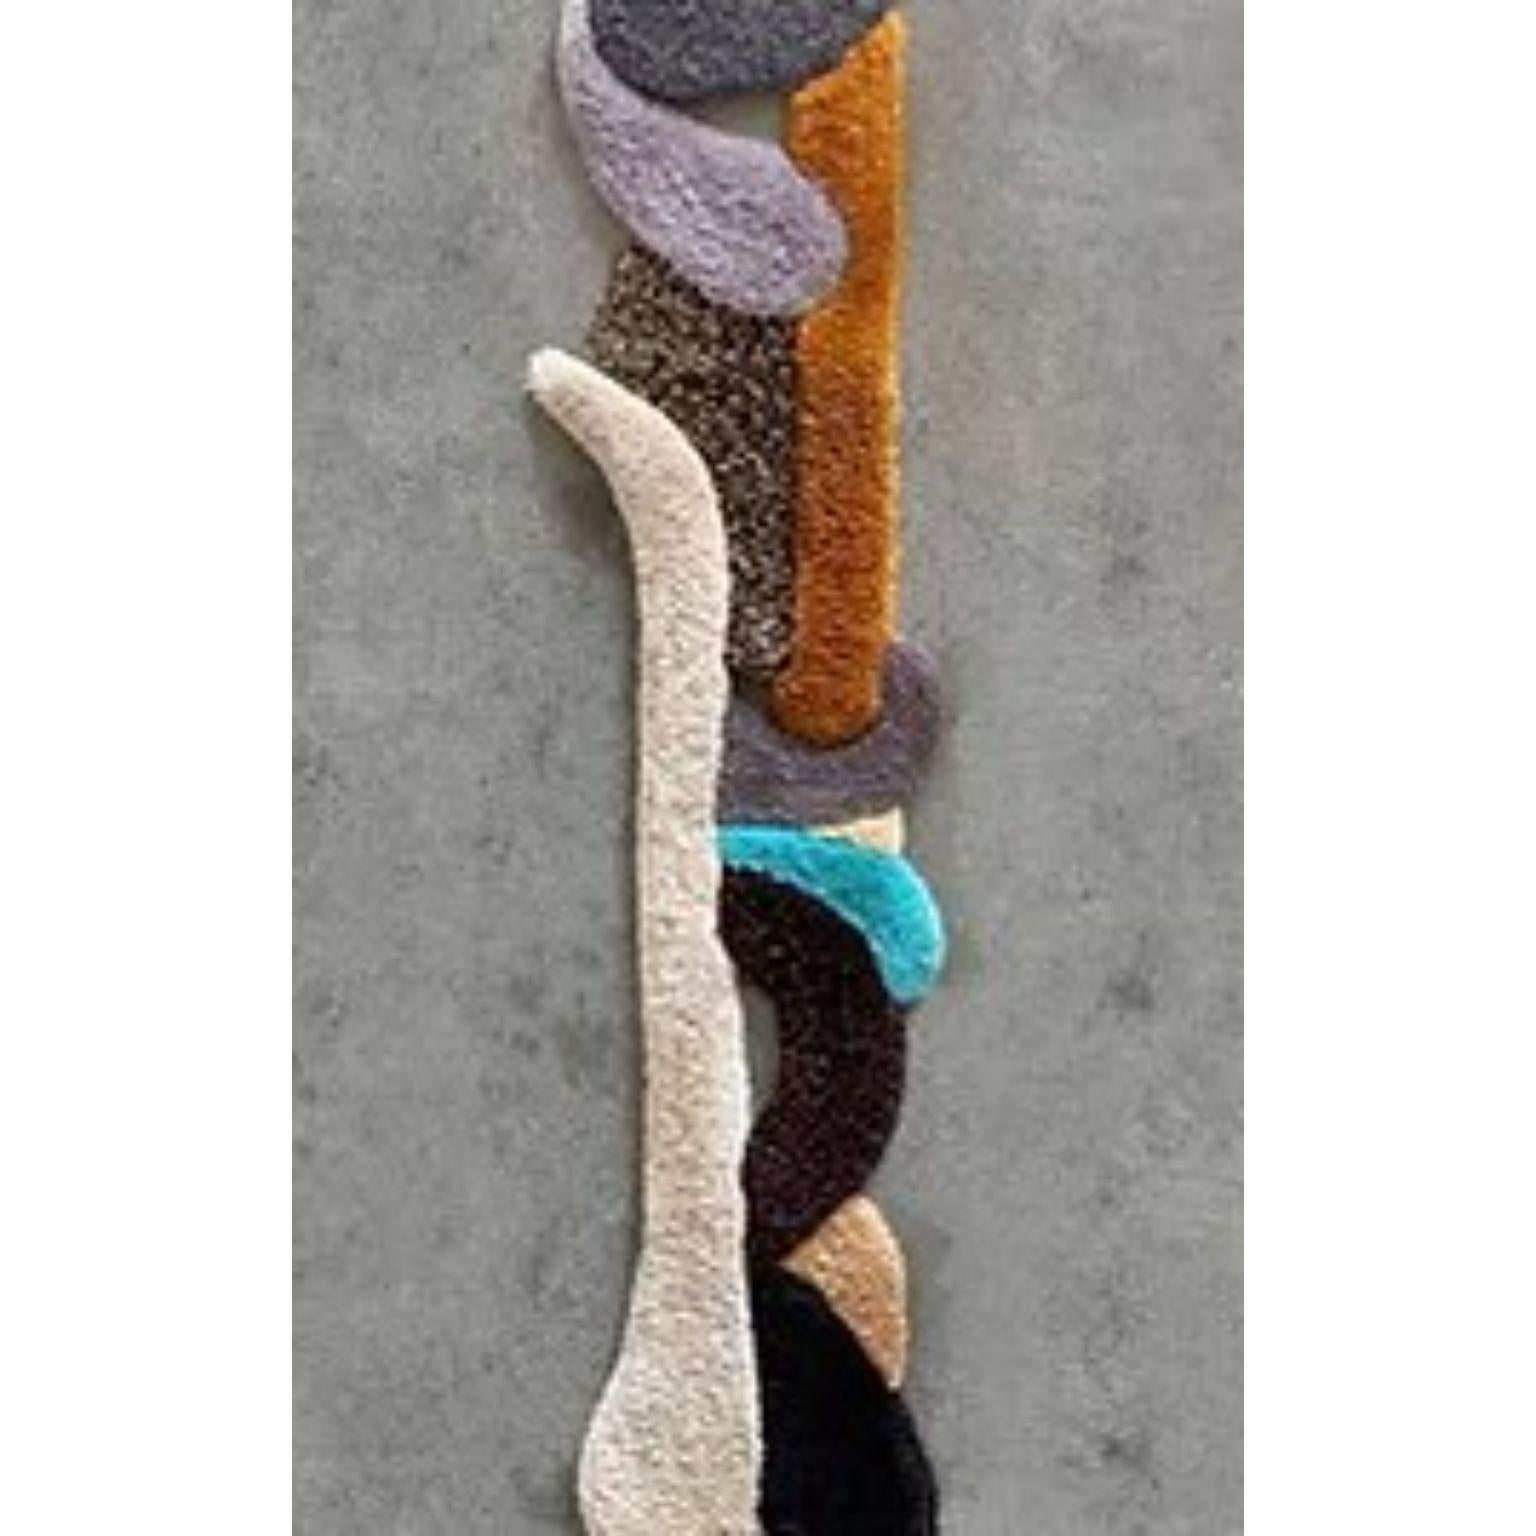 Belgian Opus XXXIX Handmade Wool Tapestry by Mira Sohlen